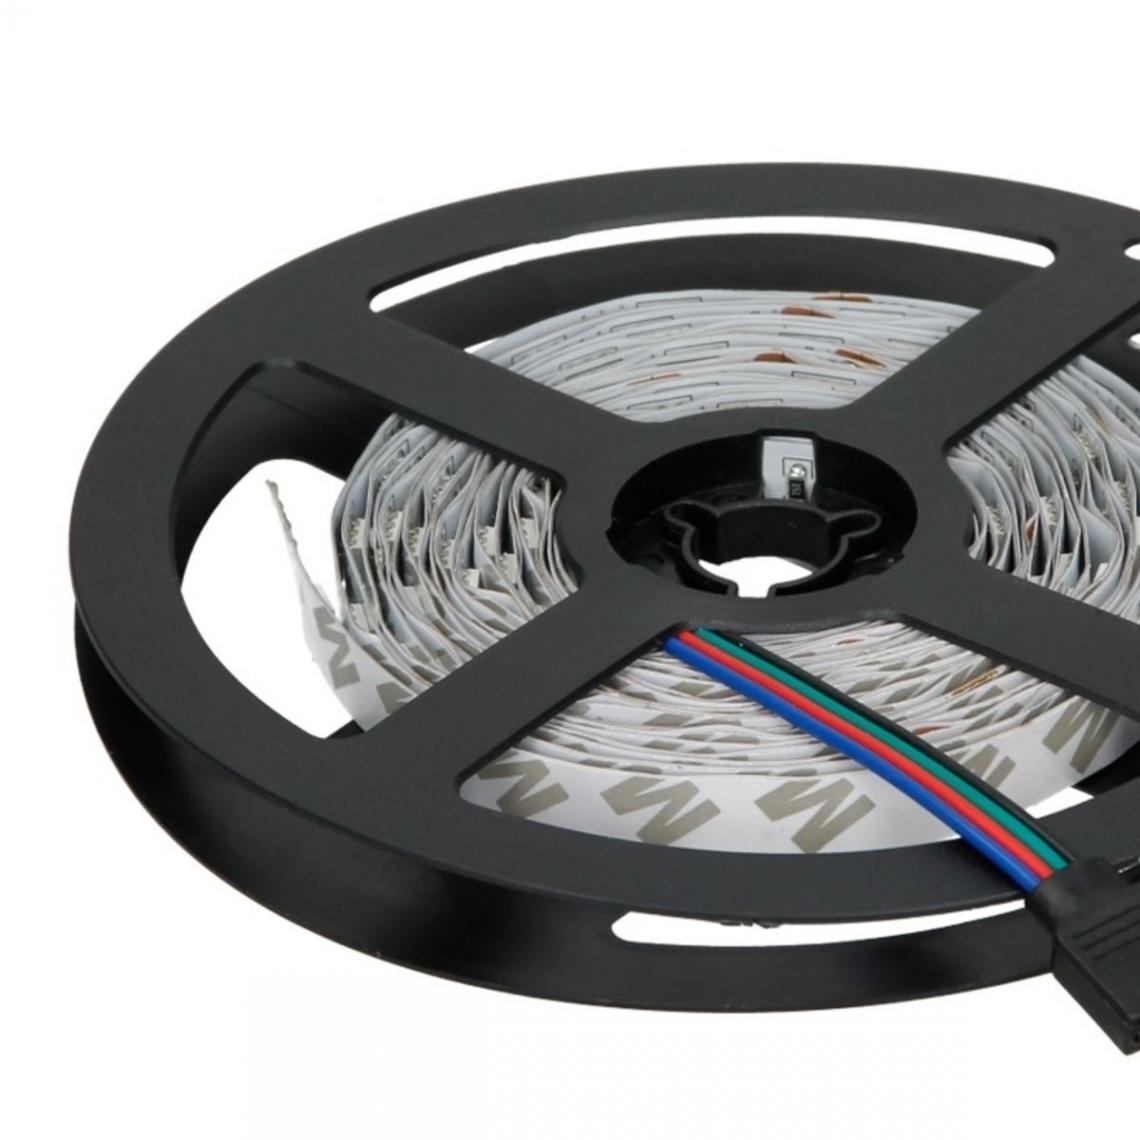 Ecd Germany - Bandes LED de 3 m, RGB - 30 LED par mètre - Ruban LED